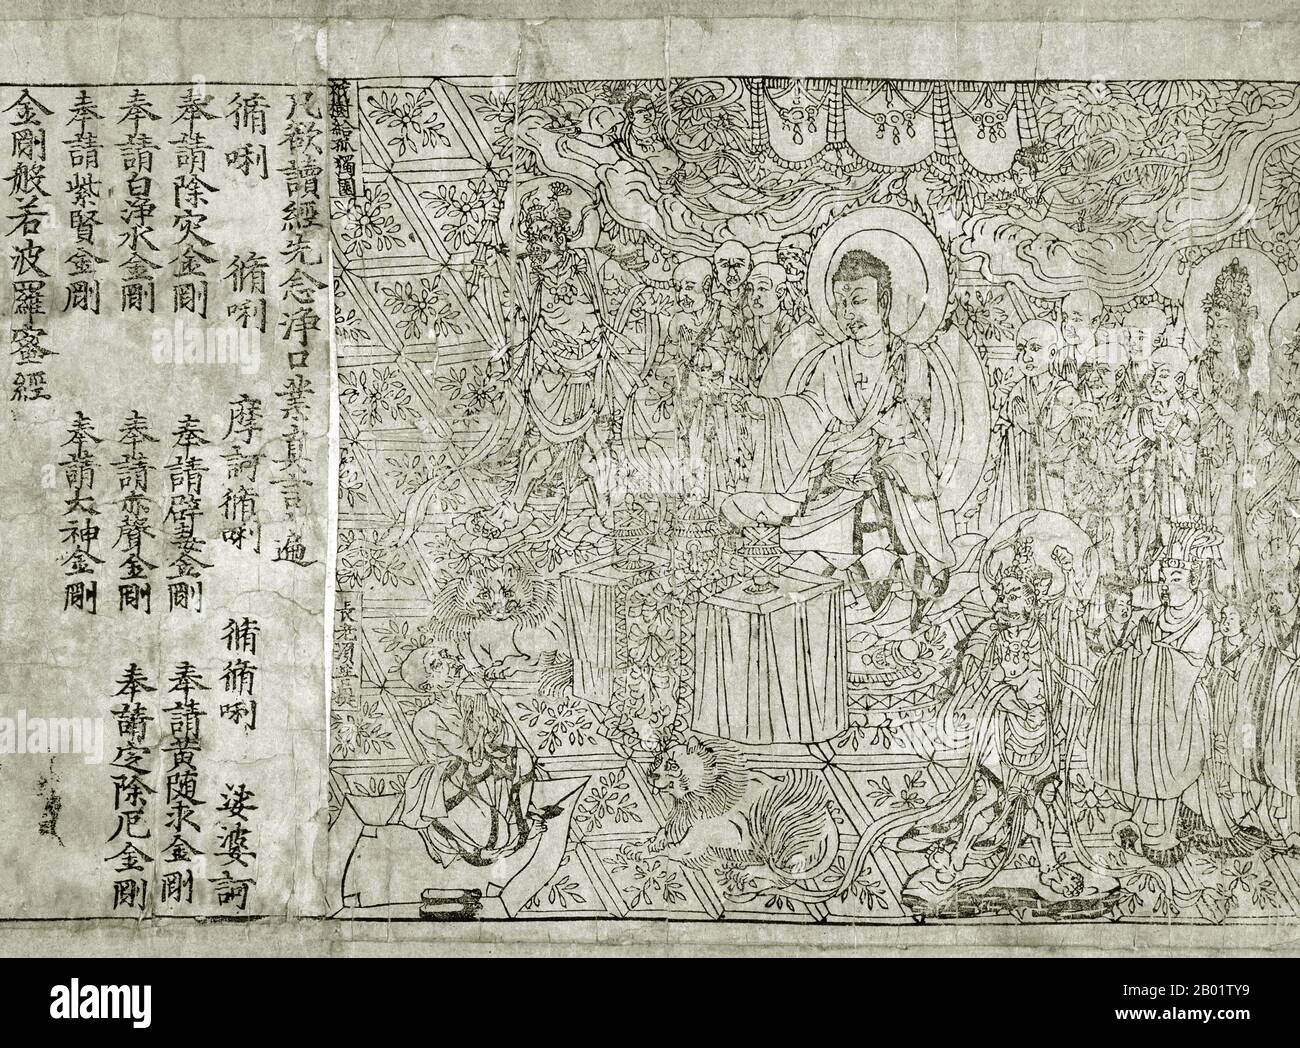 China: Frontispiece, Diamant-Sutra aus Mogao-Höhle 17, Dunhuang, späte Tang-Dynastie, 868 n. Chr. Eine Seite aus dem Diamant-Sutra, gedruckt im 9. Jahr der Xiantong-Ära der Tang-Dynastie, oder 868 n. Chr. Das früheste vollständige Exemplar eines datierten gedruckten Buches wurde 1907 von Aurel Stein aus den Mogao-Höhlen in Dunhuang, Gansu, gesammelt. Der Diamant sūtra ist eine kurze und bekannte Mahāyāna sūtra des Genres Prajñāpāramitā oder „Perfektion der Weisheit“ und betont die Praxis des nicht-bleibenden und nicht-Bindung. Der Titel ist der Diamantschneider der vollkommenen Weisheit. Stockfoto